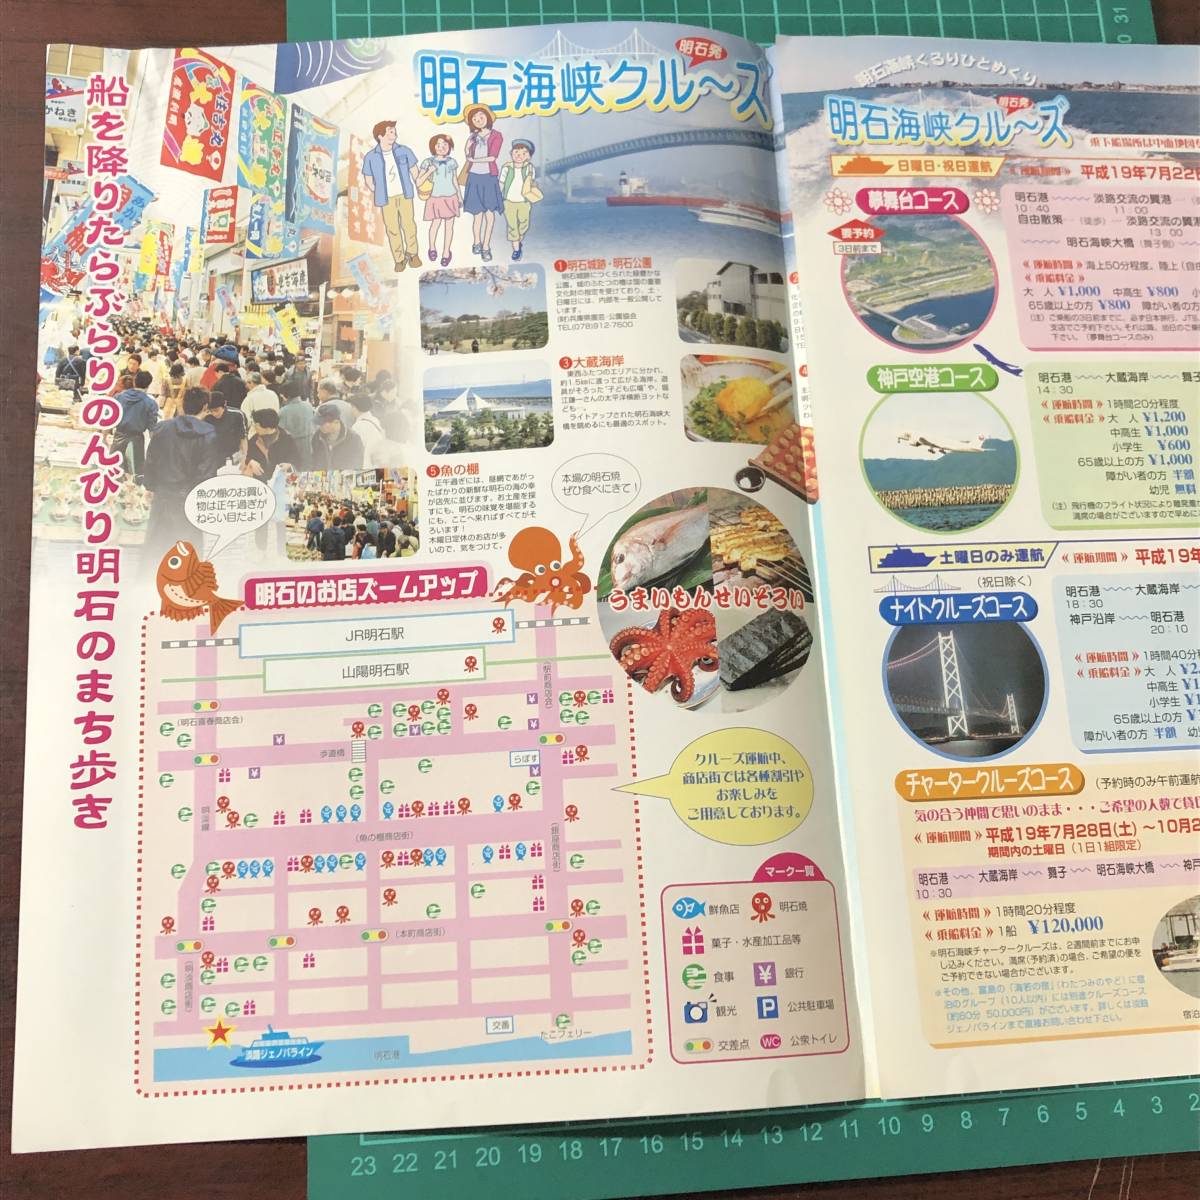 ..jenoba line Akashi sea . cruise Akashi departure Akashi sea . large ... Kobe catalog pamphlet [F0348]